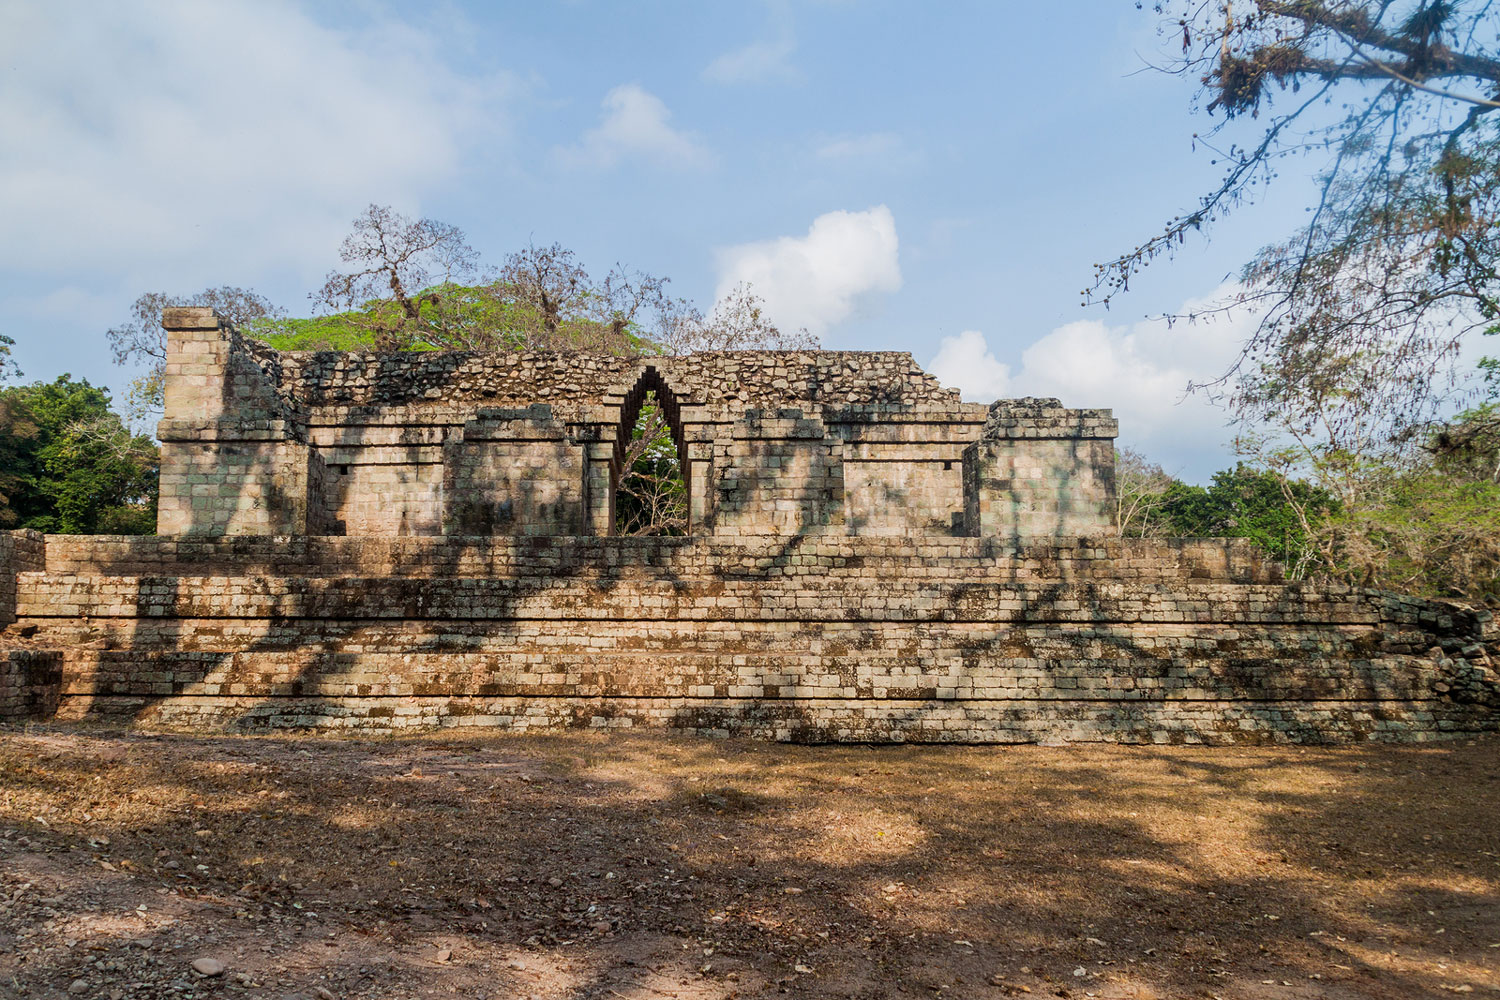 Ruins at the archaeological site Copan, Honduras